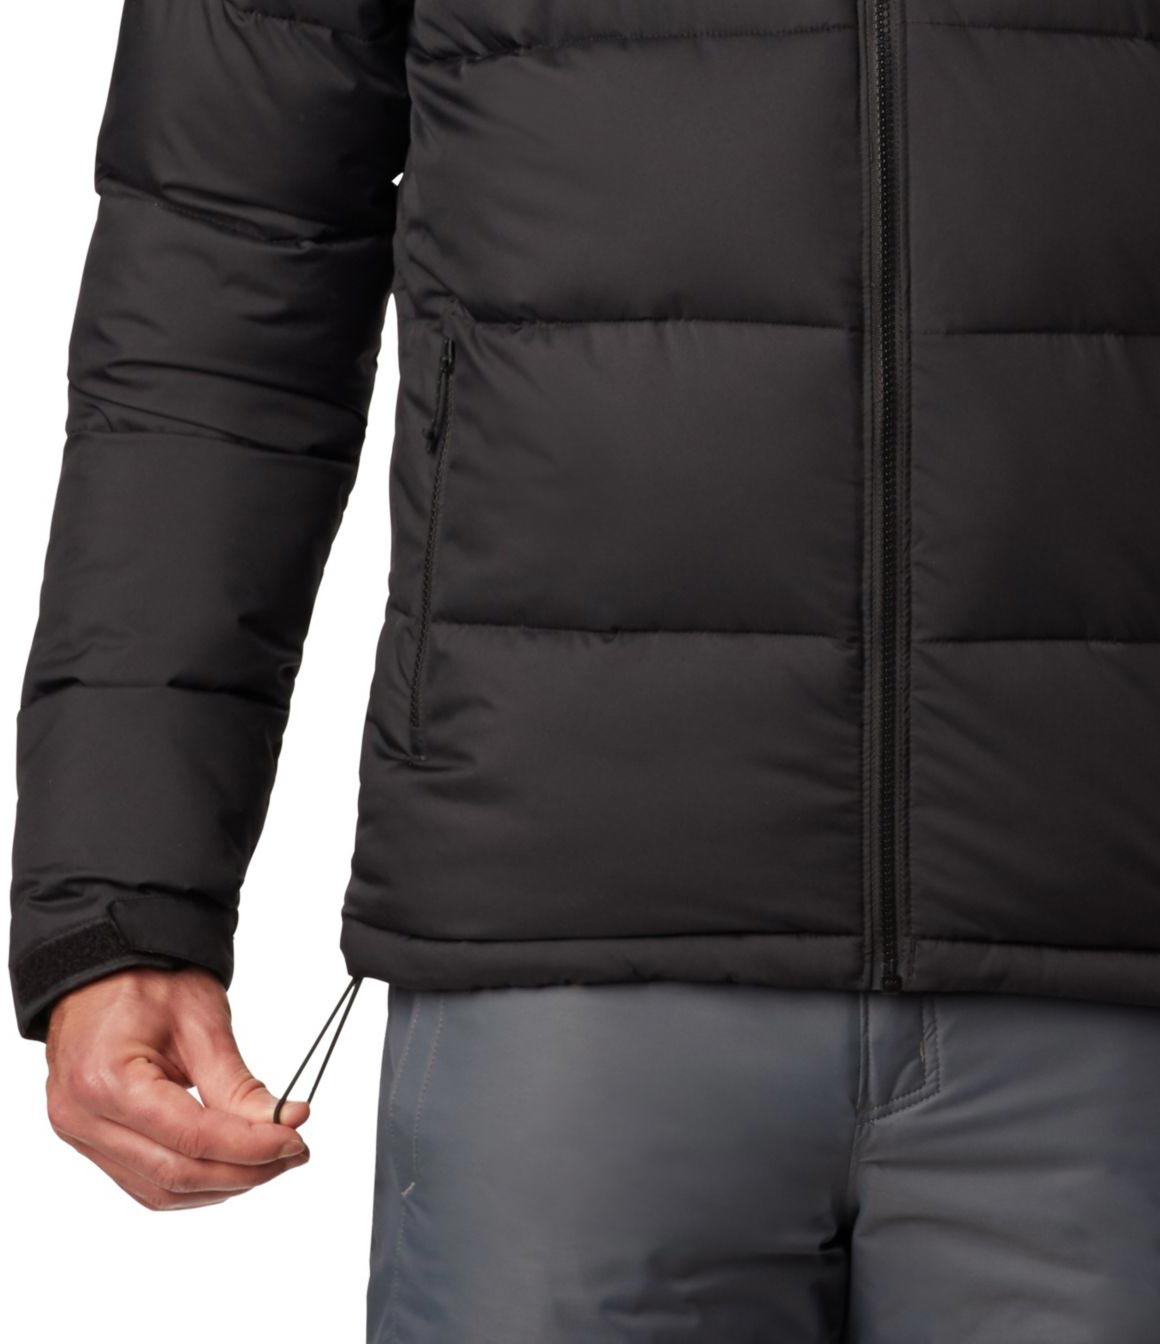 Men's winter jacket